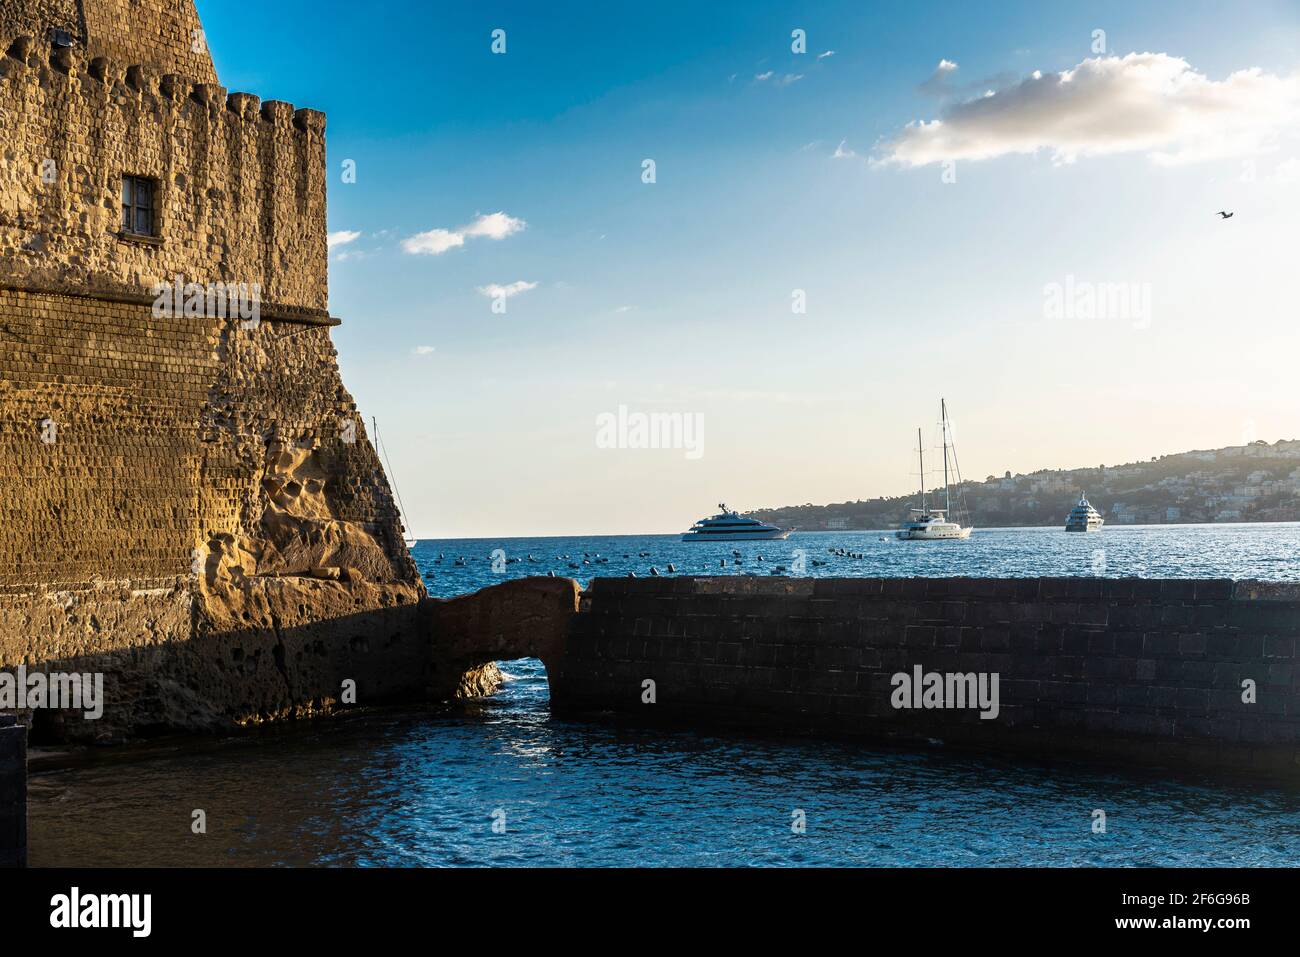 Fassade des Castel dell'Ovo (Egg Castle) und Yachten und Segelboote auf dem Golf von Neapel, Italien Stockfoto